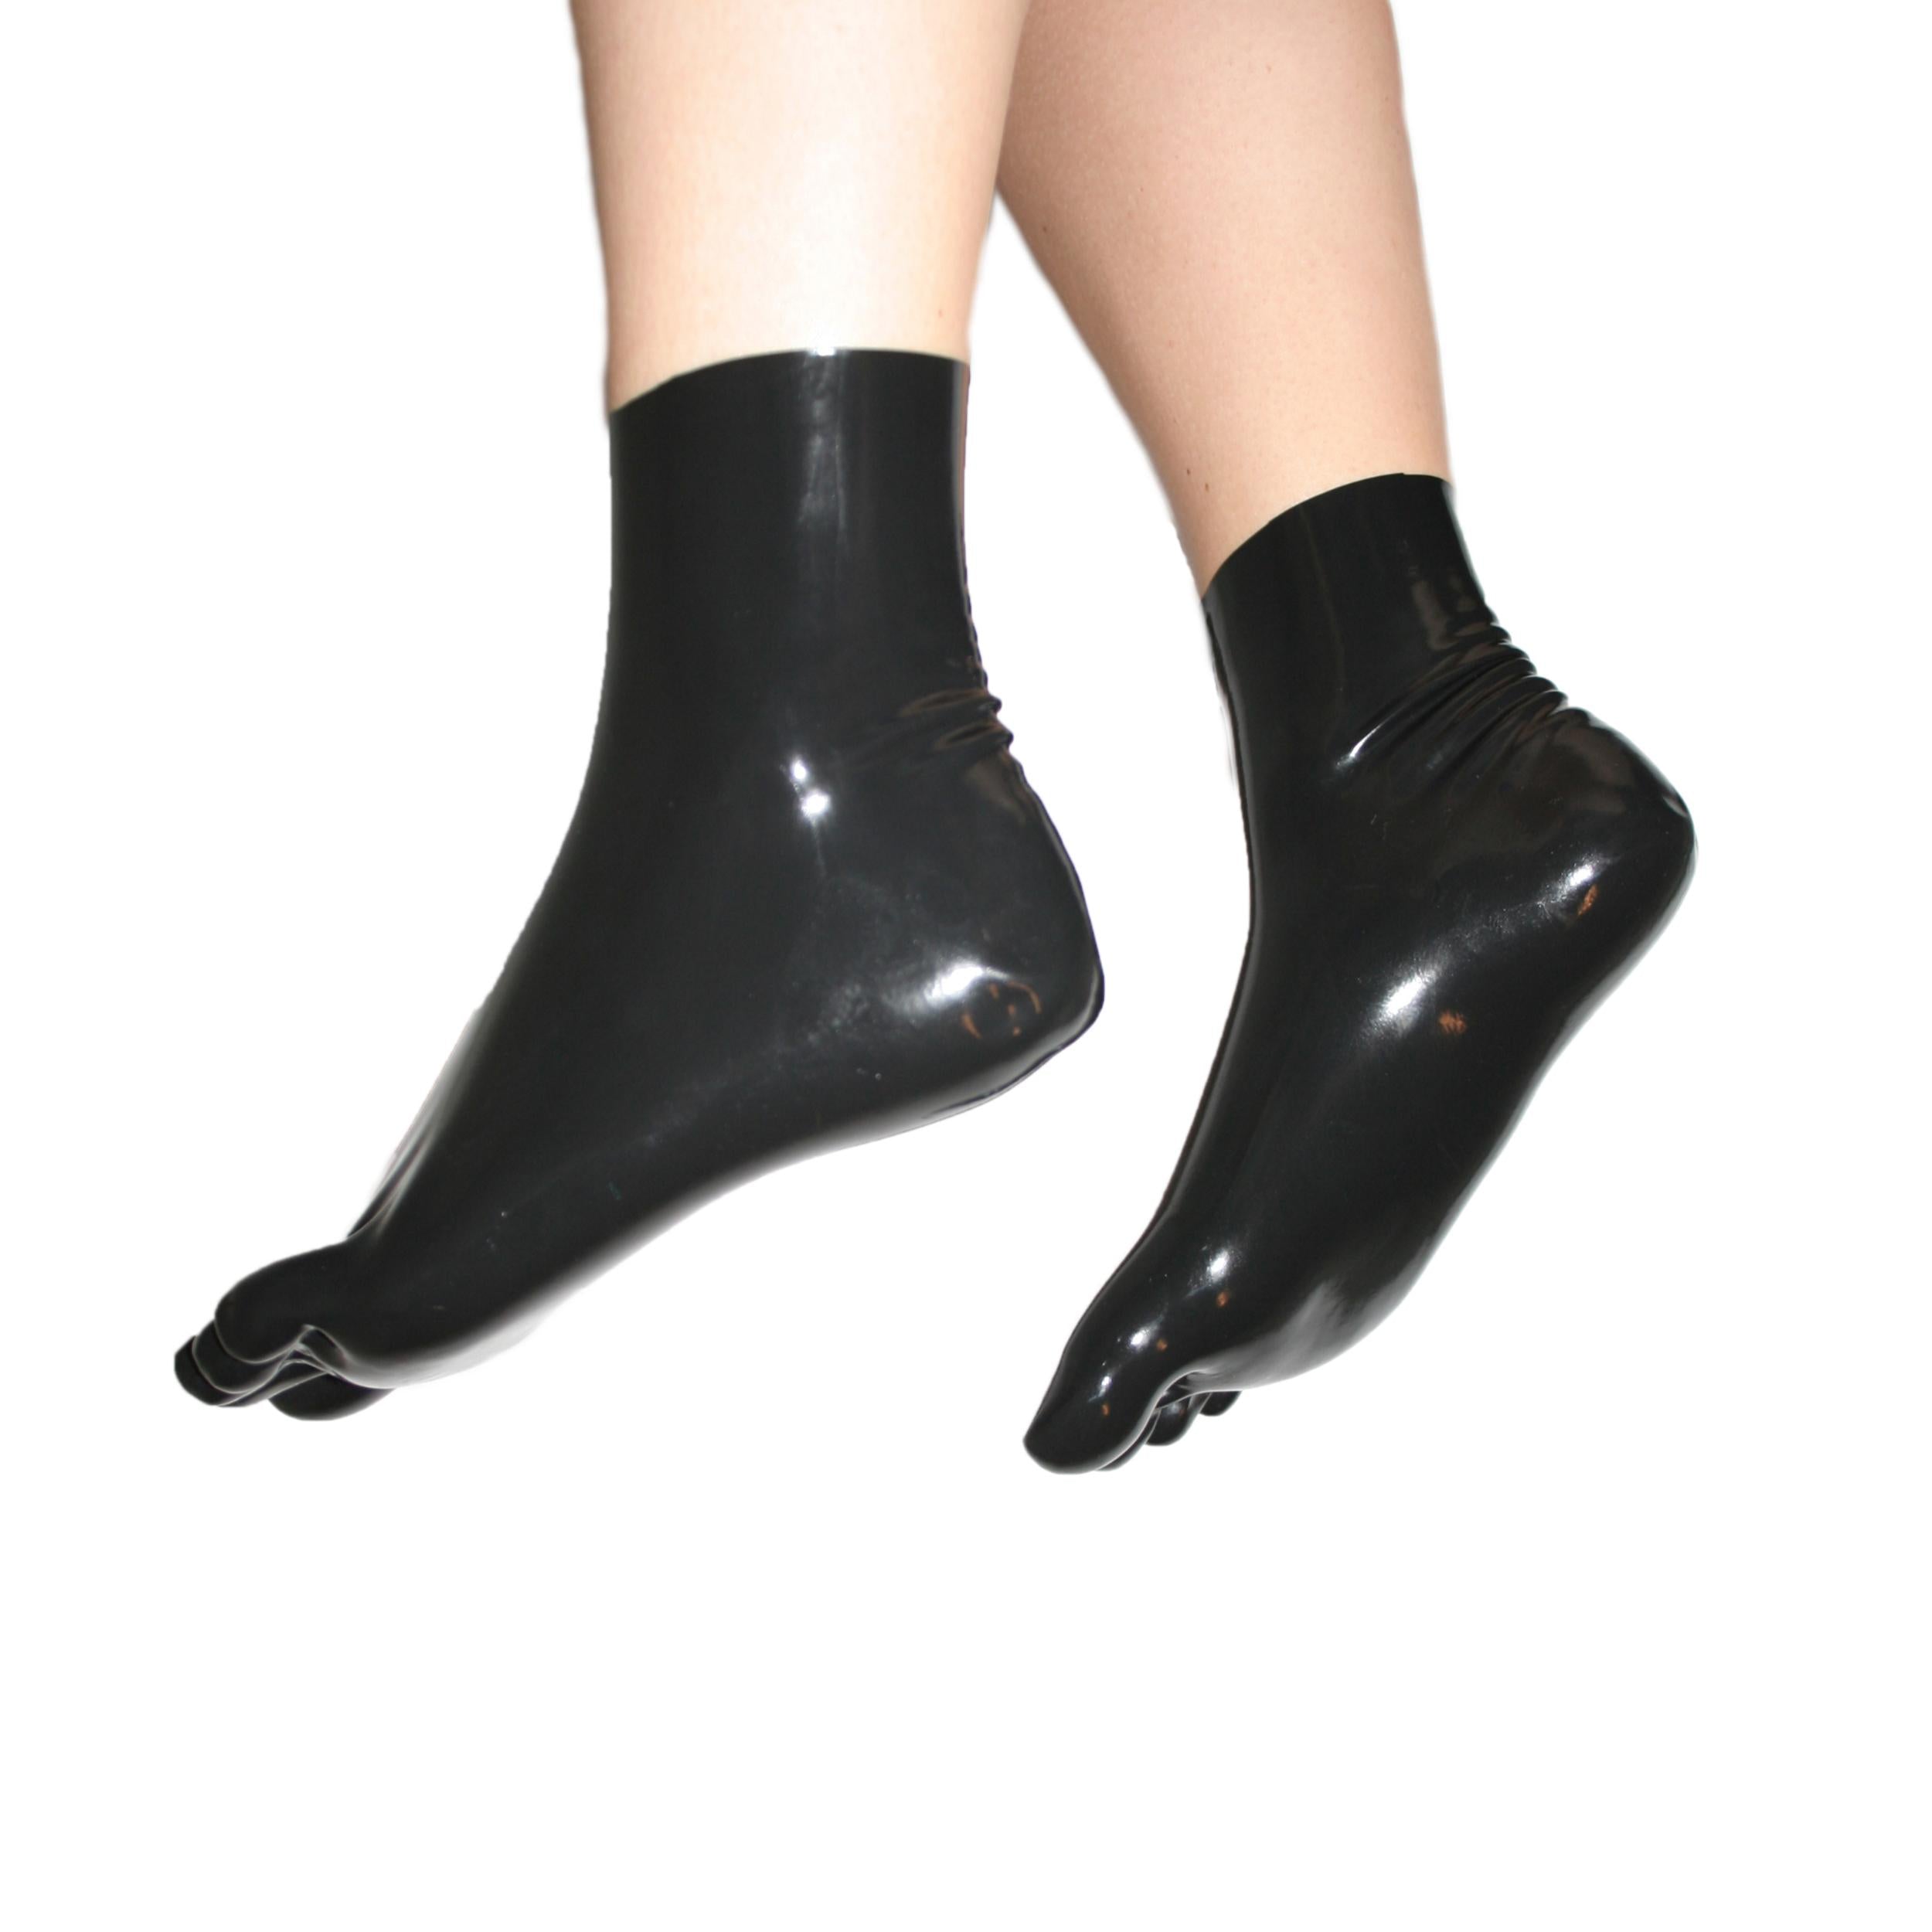 Rubberfashion Sexy Latex Zehen Socken kurz - extra dicke -Zehensocken knöchel lang - Latex Strümpfe für Damen und Herren